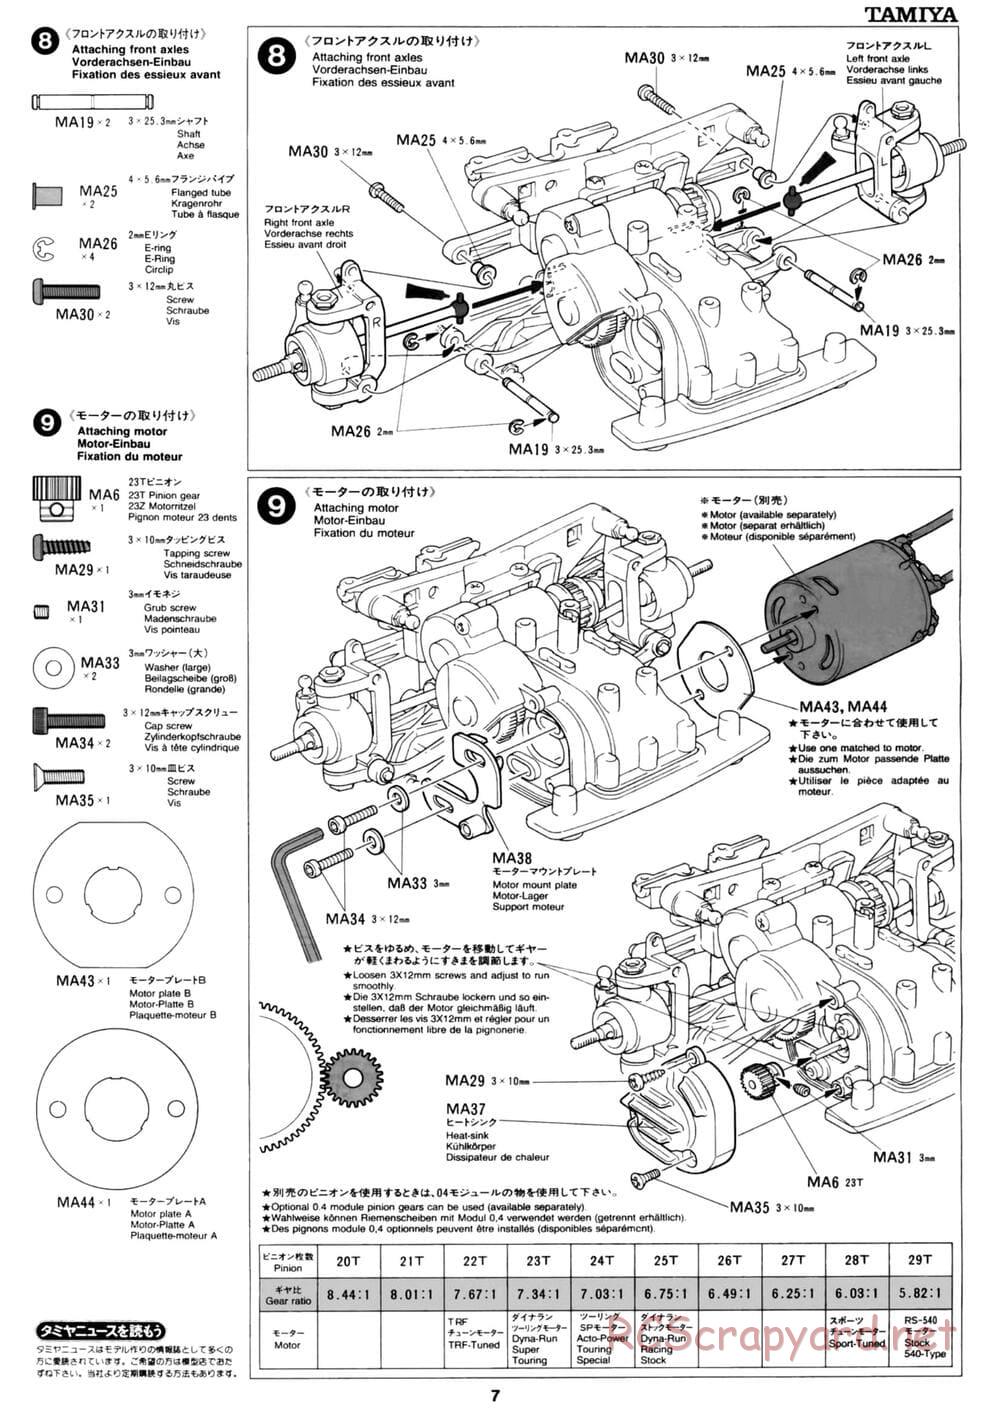 Tamiya - David Jun TA03F Pro Chassis - Manual - Page 7